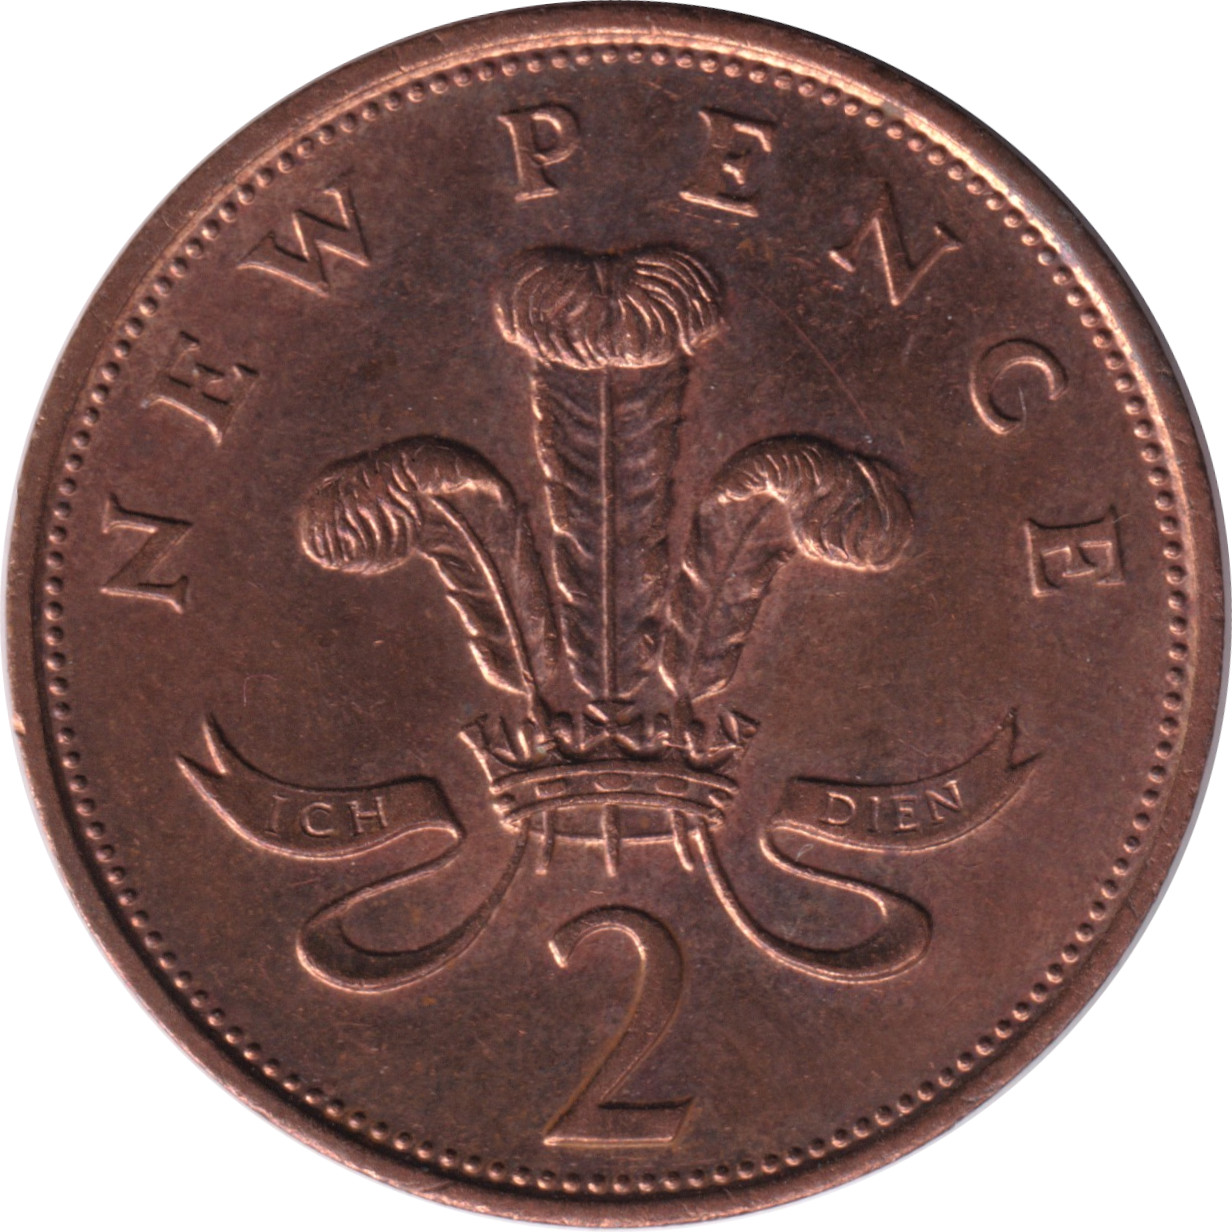 2 pence - Elizabeth II - Young bust